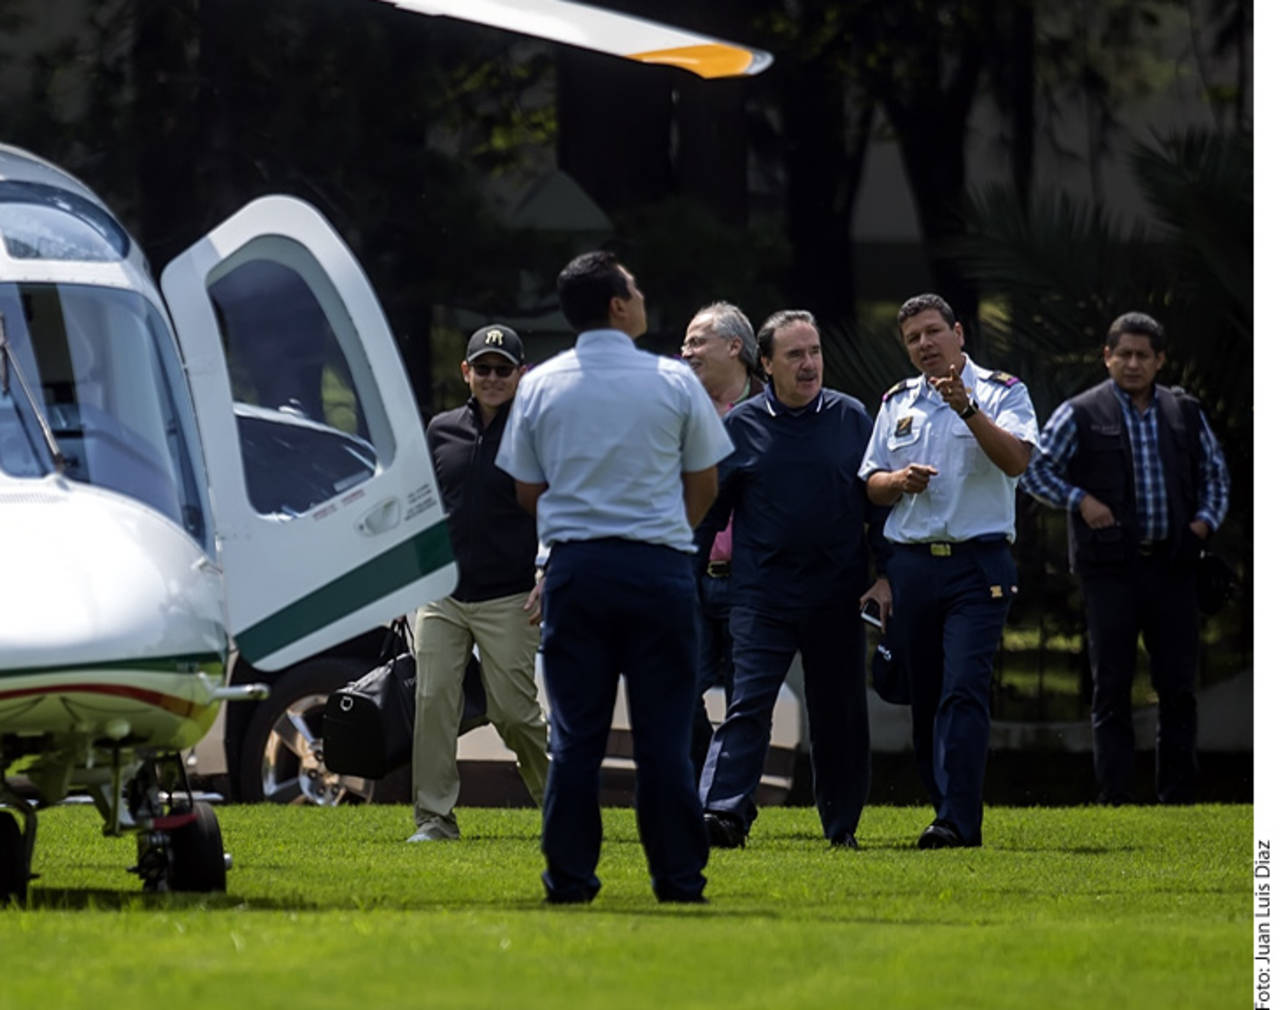 Gamboa, del Campo Marte al golf en helicóptero de Fuerza Aérea